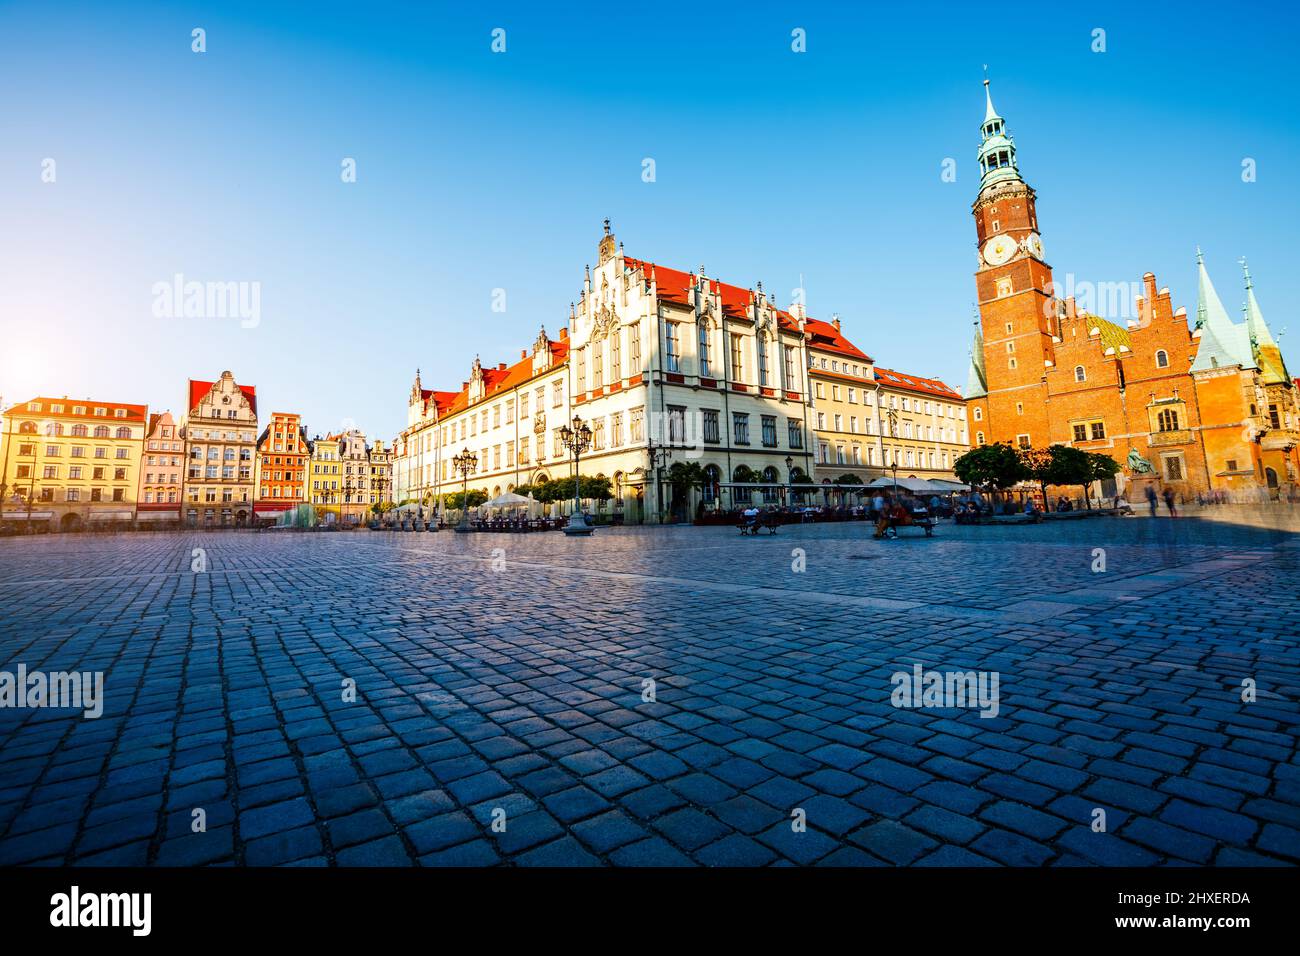 Fantastica vista sulle antiche case in una giornata di sole. Splendida foto e scena pittoresca. Ubicazione Piazza del mercato famosa a Breslavia, Polonia, Europa. Foto Stock